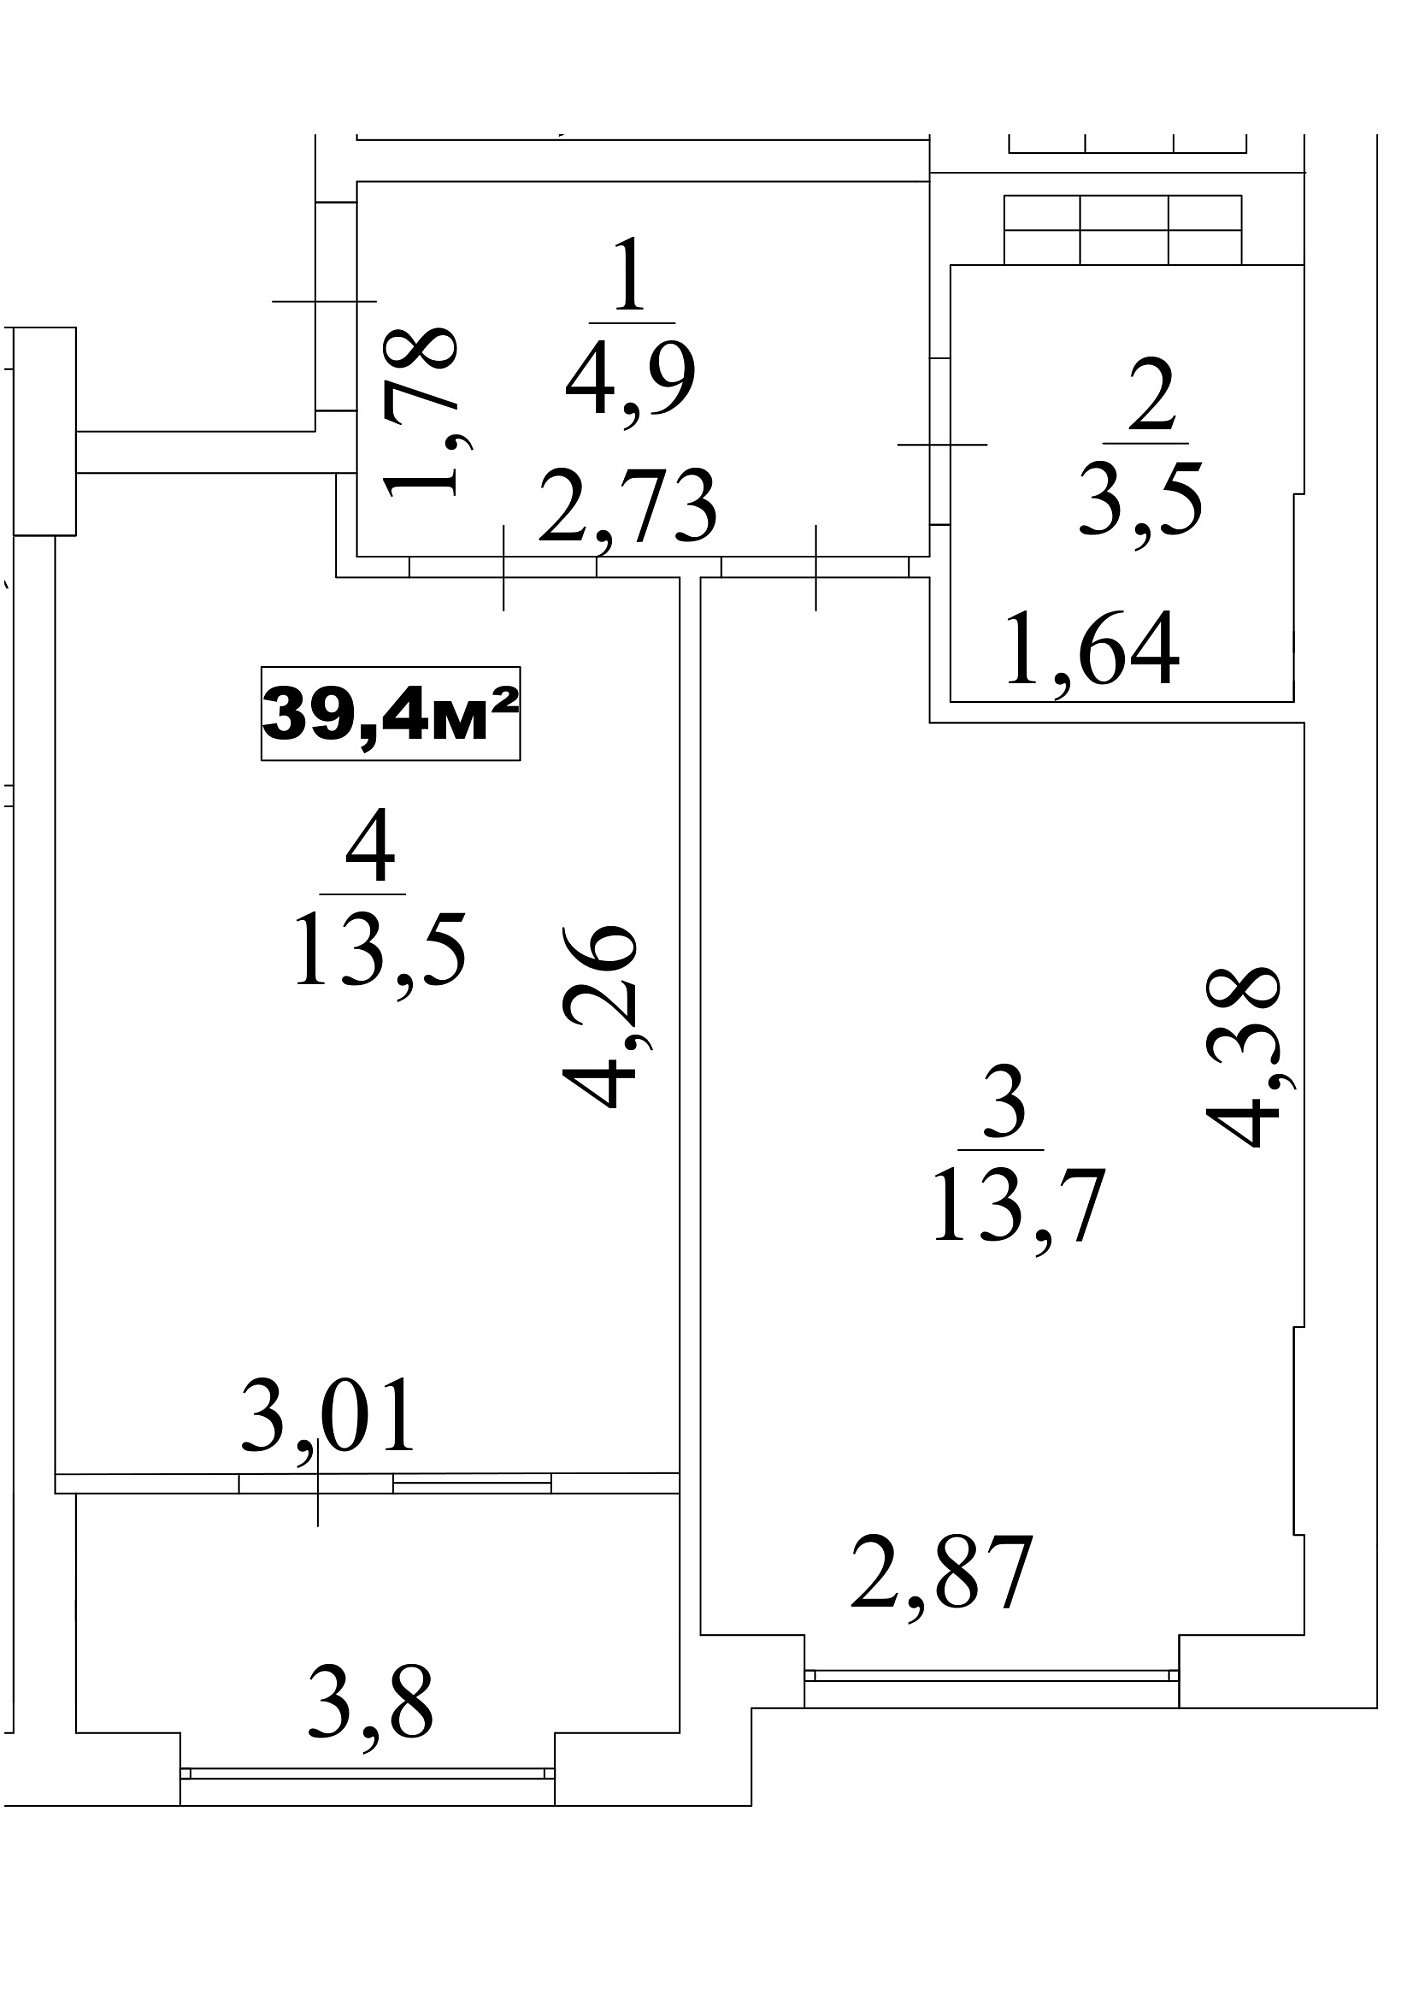 Планировка 1-к квартира площей 39.4м2, AB-10-06/0052в.